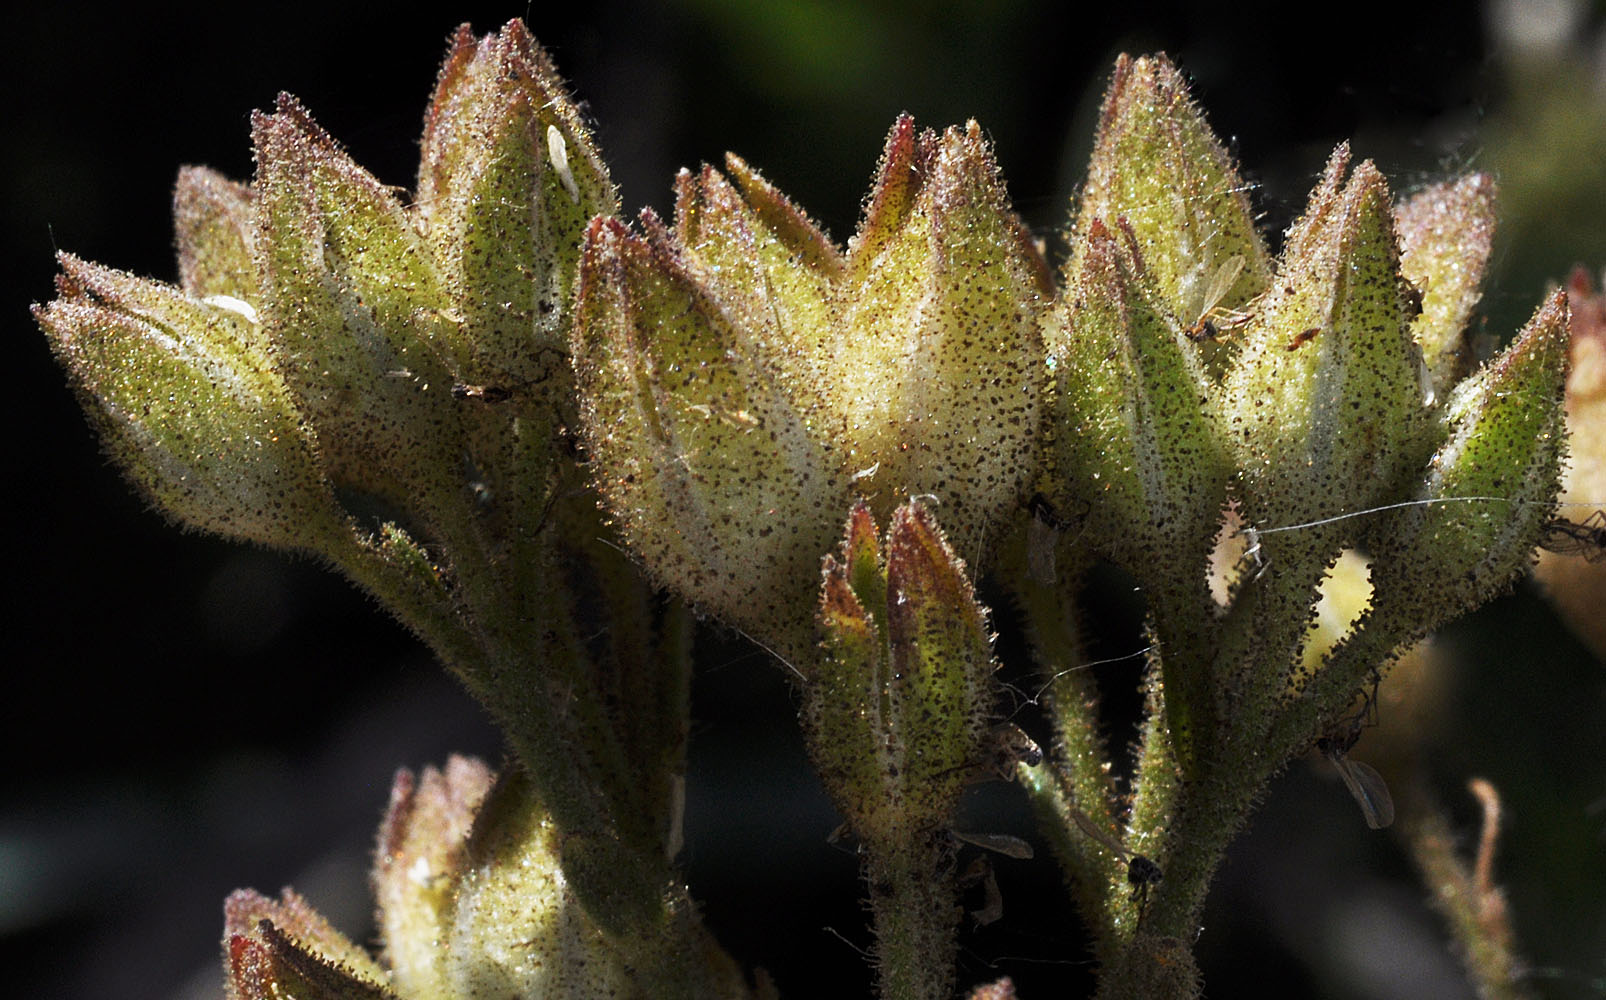 Flora of Eastern Washington Image: Polemonium pectinatum